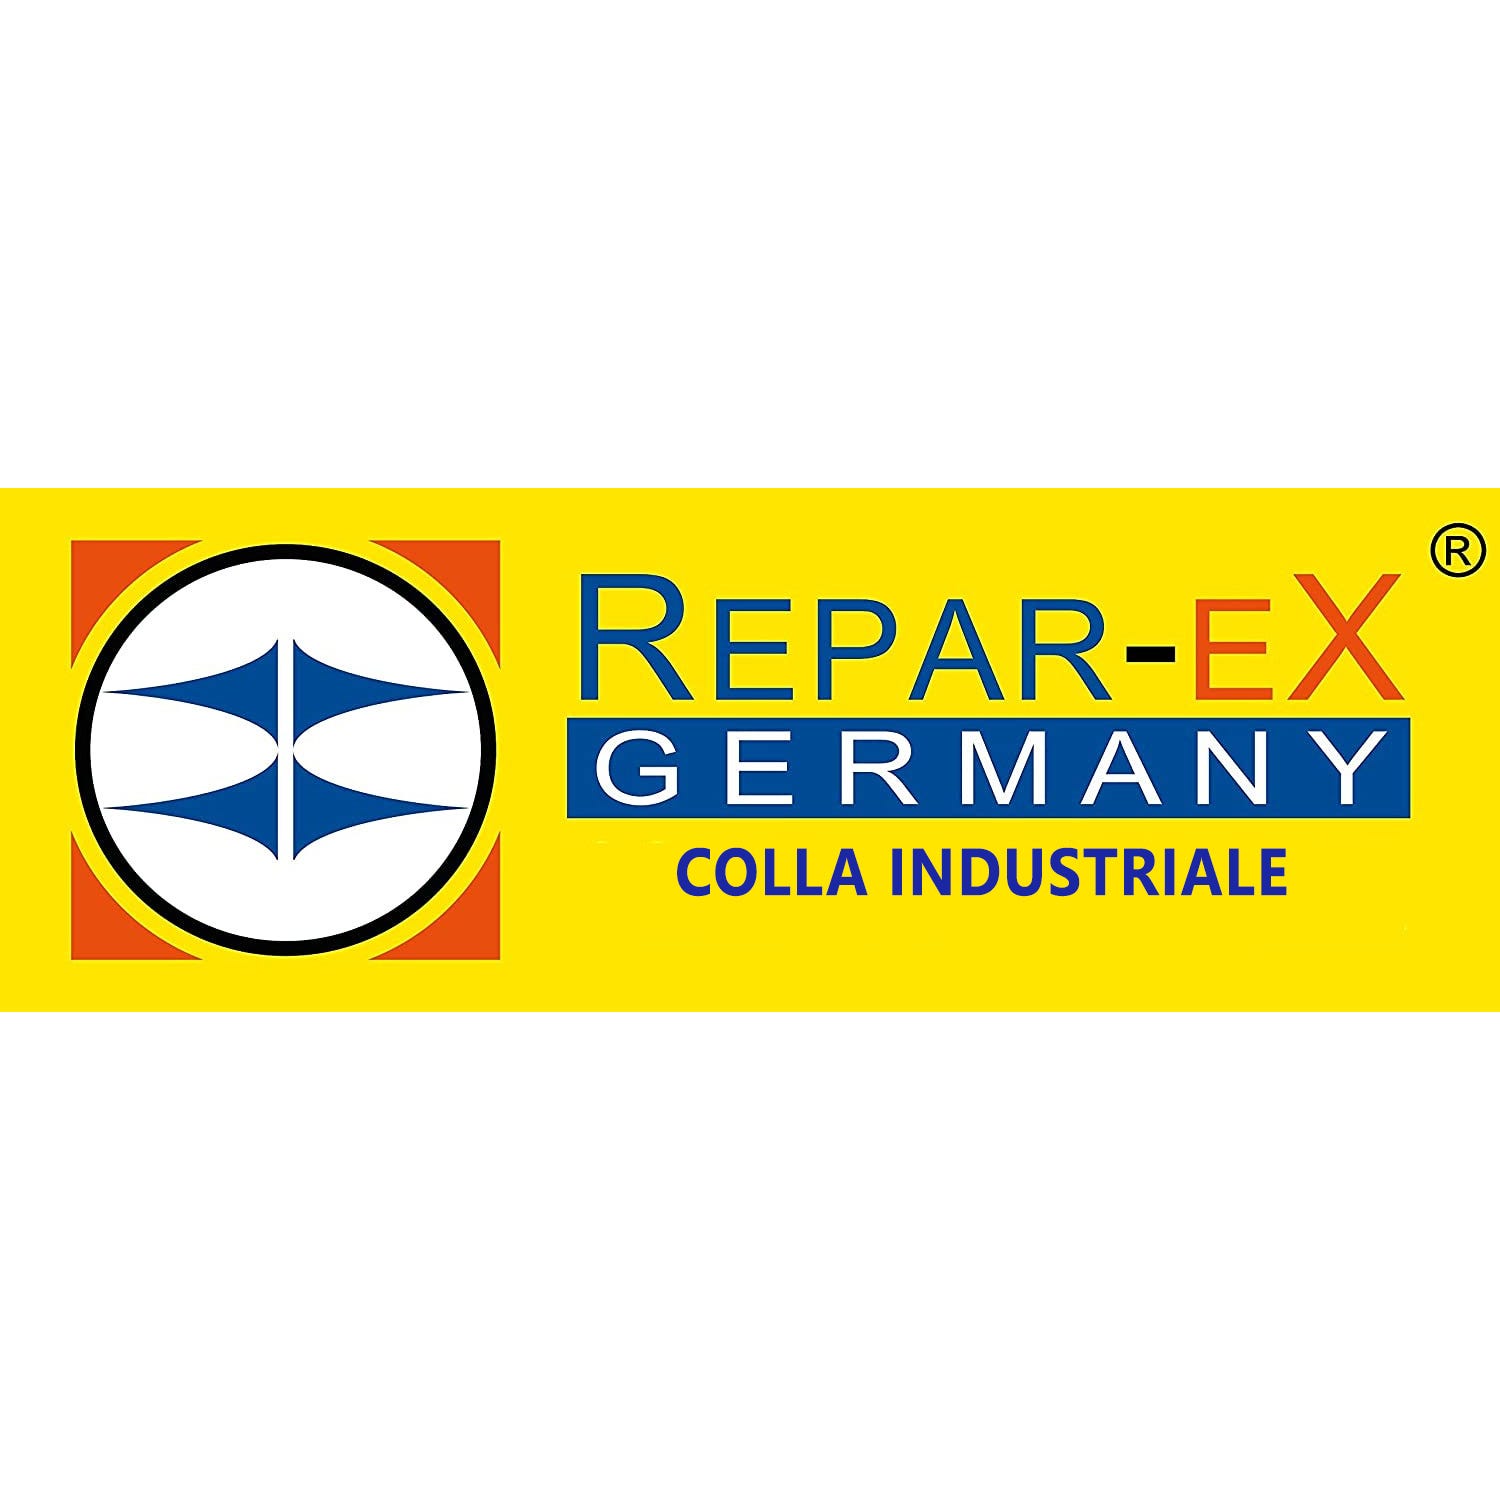 REPAR-EX - Flacon de Poudre d'Assemblage Reparex - Additif d'Assemblage de Colle - Tous Supports - Flacon de 30 Grammes 6